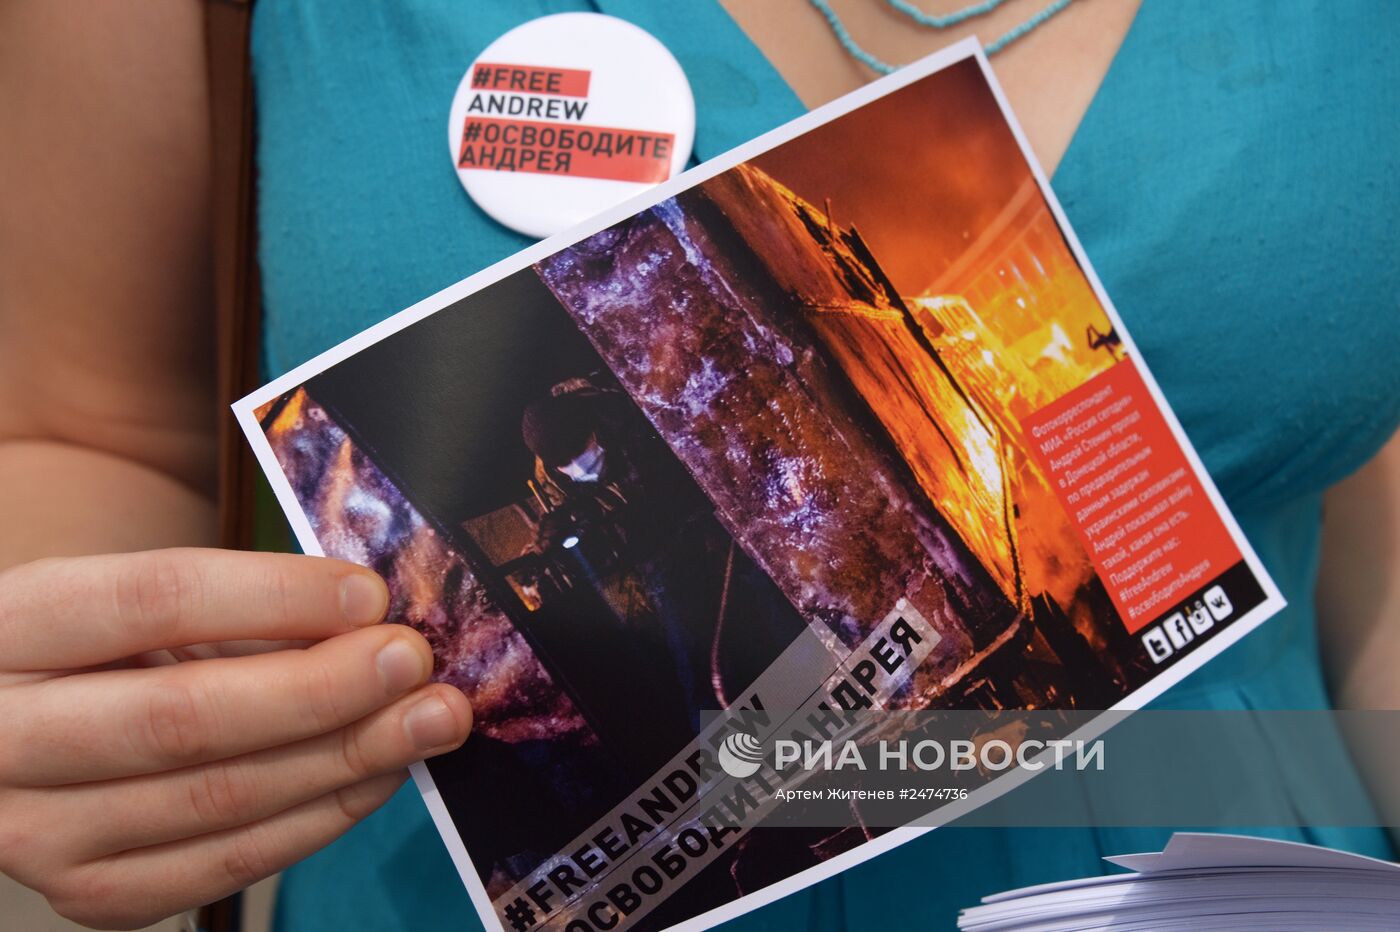 Акция в поддержку фотокорреспондента Андрея Cтенина